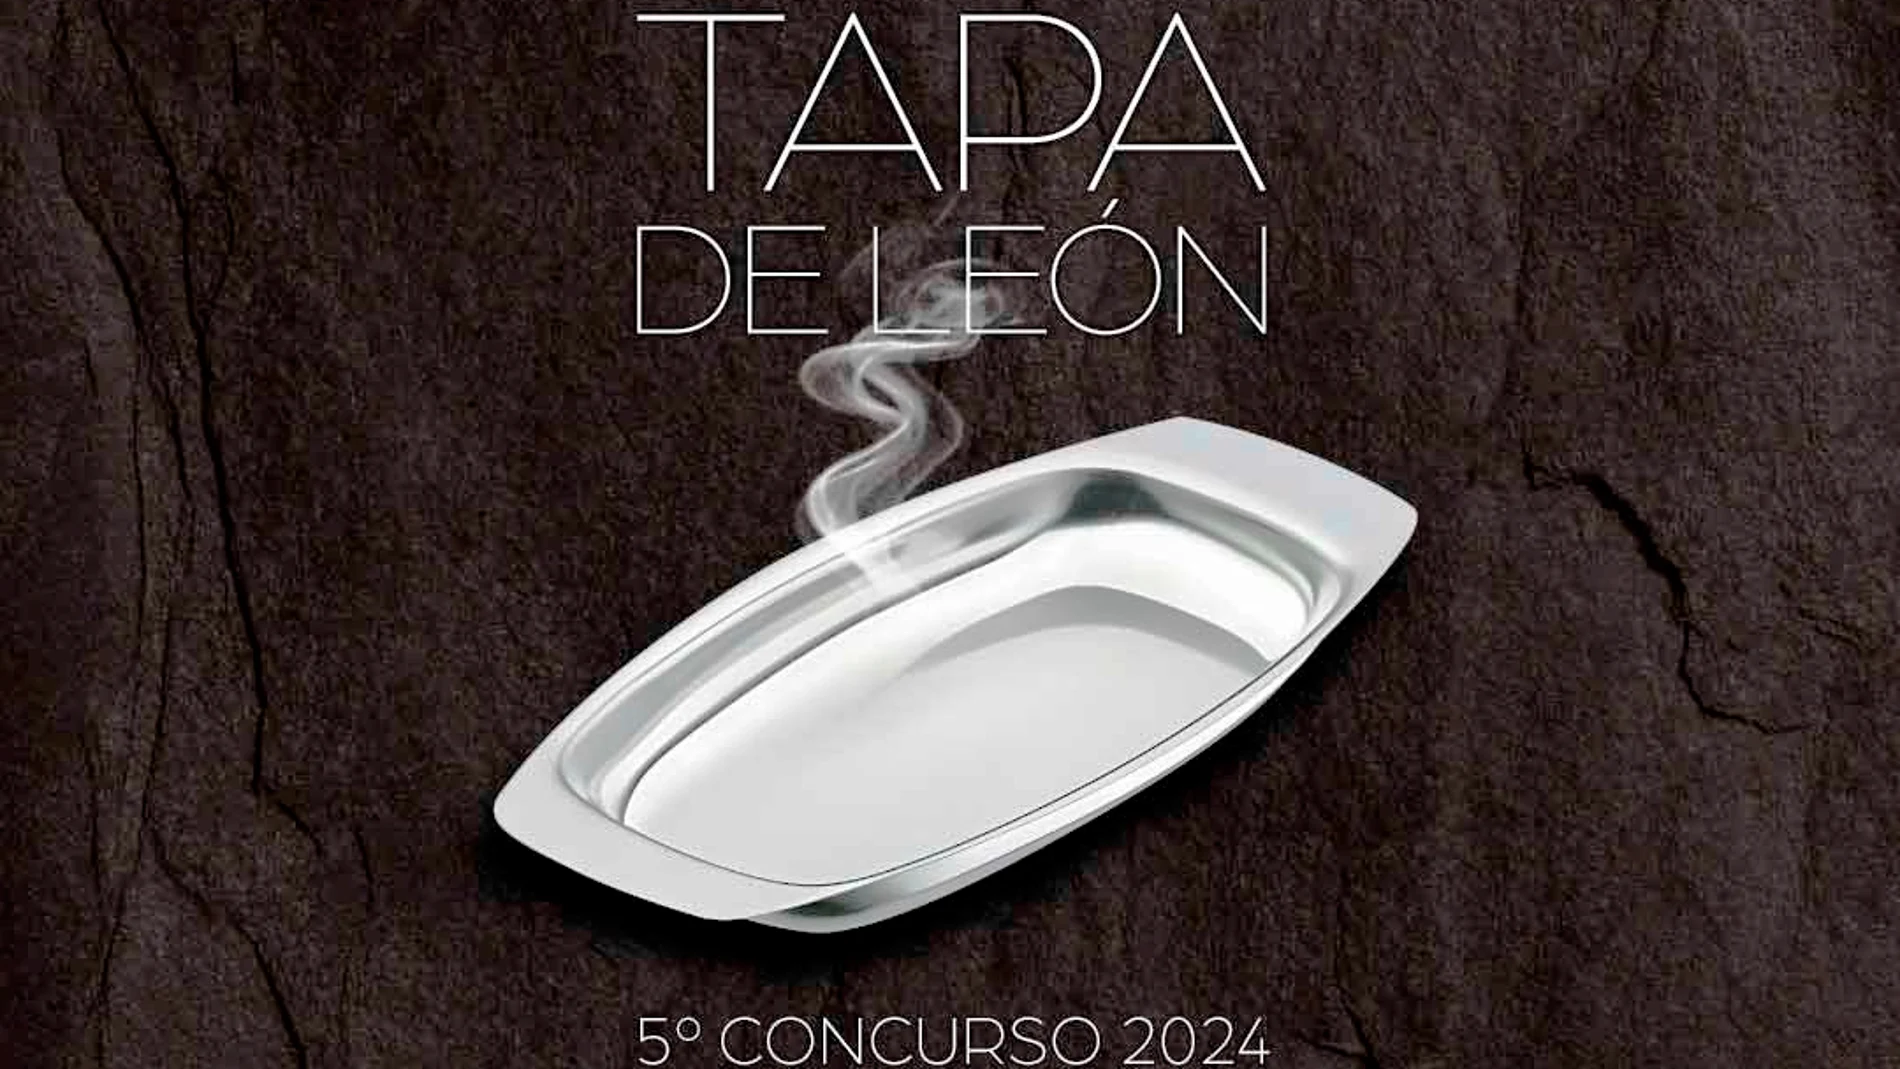 Cartel del concurso de la Tapa de León